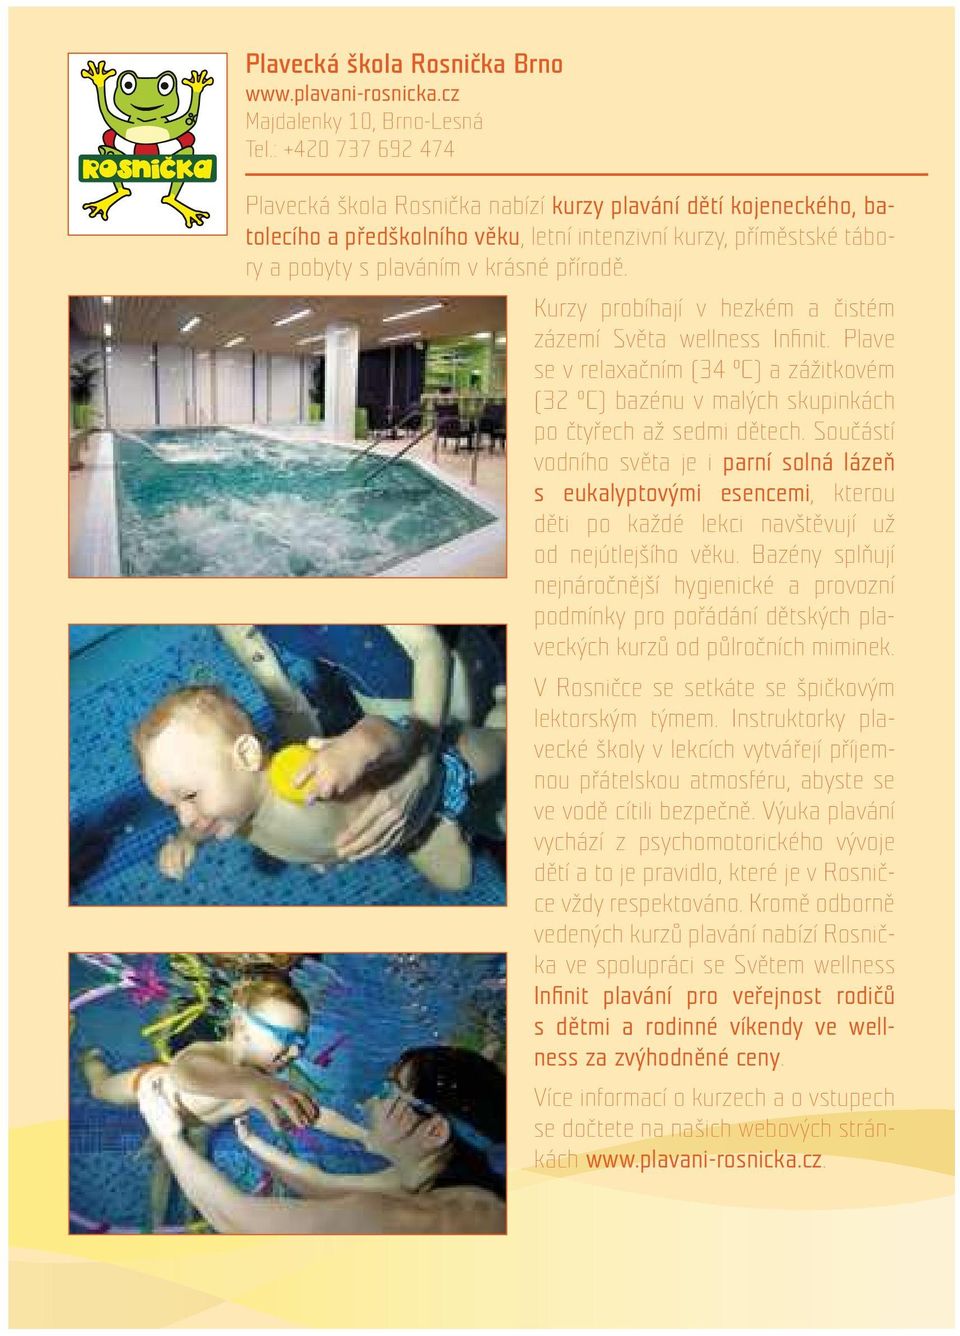 Kurzy probíhají v hezkém a čistém zázemí Světa wellness Infinit. Plave se v relaxačním (34 C) a zážitkovém (32 C) bazénu v malých skupinkách po čtyřech až sedmi dětech.